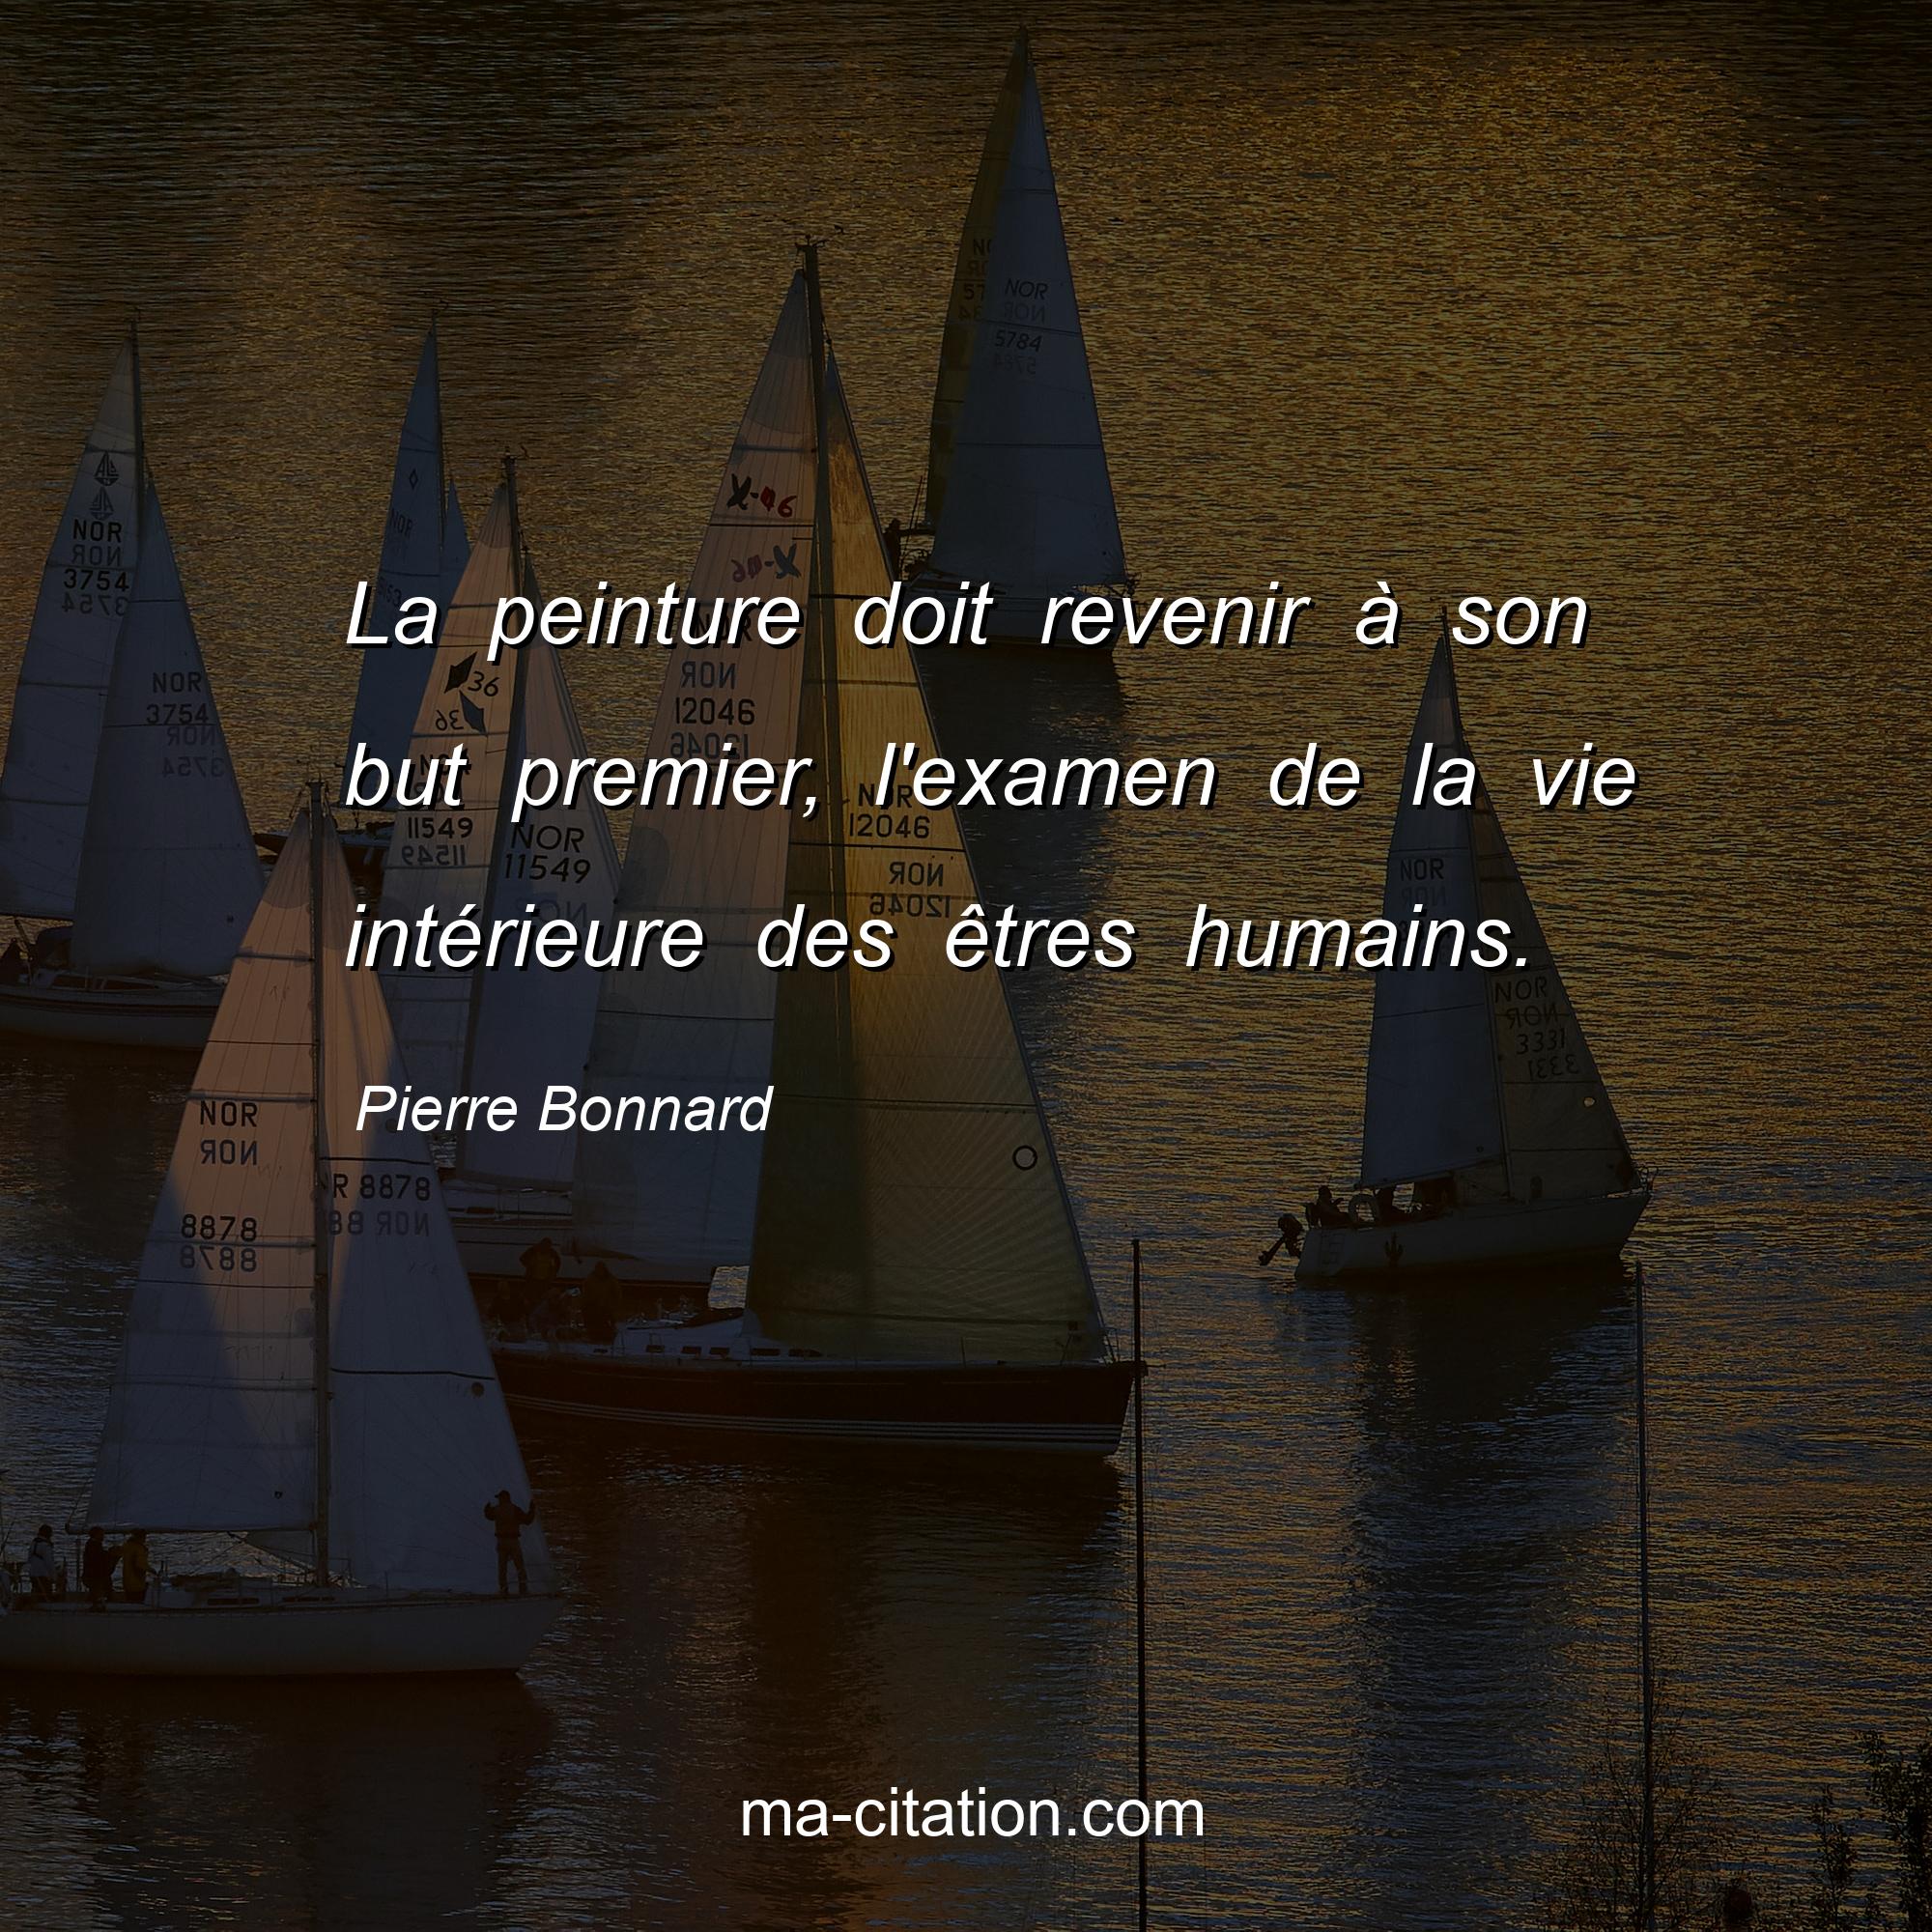 Pierre Bonnard : La peinture doit revenir à son but premier, l'examen de la vie intérieure des êtres humains.